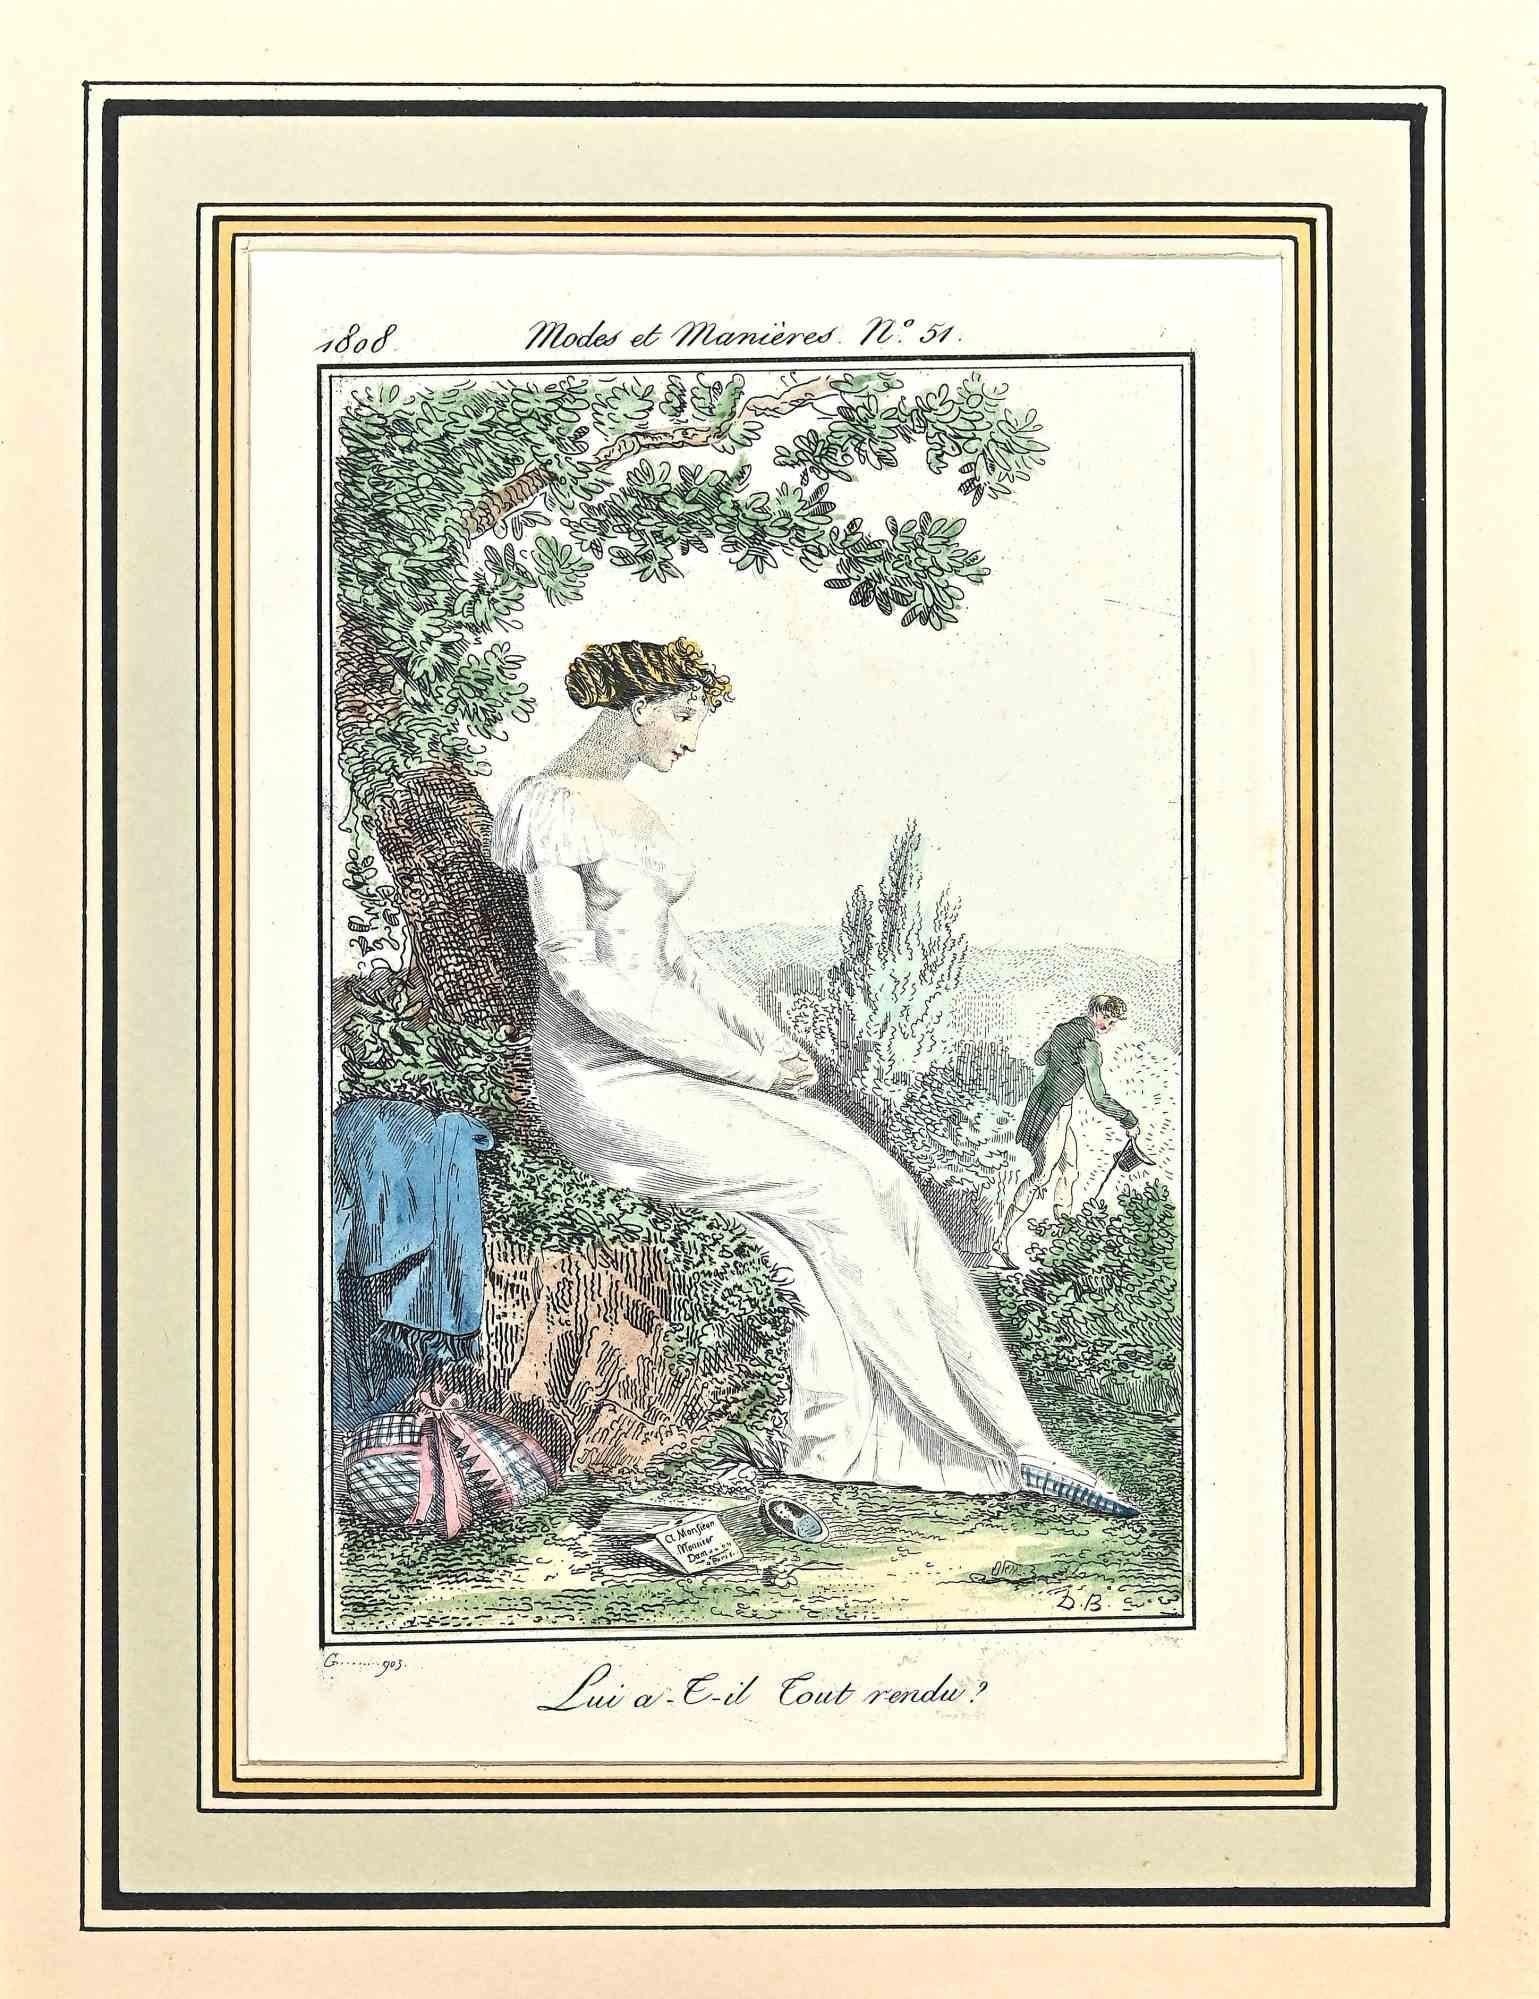 Lui A-T-Il Tout Vendu ? est une Gravure Originale Aquarellée à la main de la série "Costumes Parisiens" publiée en 1797 par le Journald des Dames et des Modes".

Costume Parisien - Modèle n. 51 est une estampe originale aquarellée réalisée en 1797.